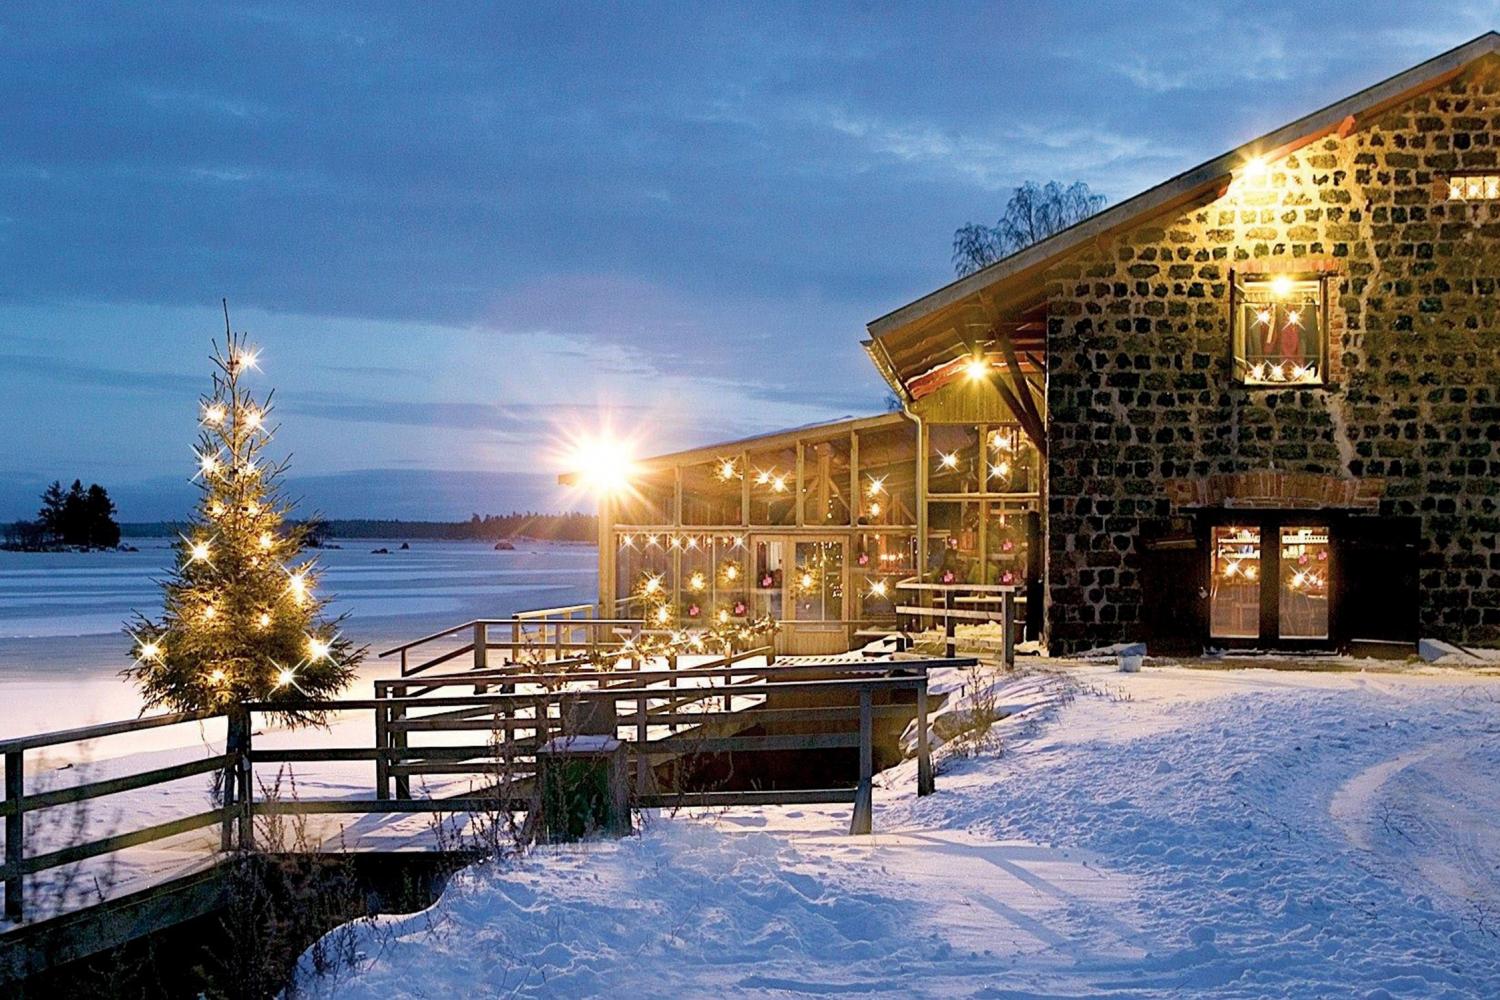 Axmarbrygga Havskrog är en fiskrestaurang med konferens- och festlokaler som ligger på gränsen mellan Gästrikland och Hälsingland, i kulturhistoriskt intressanta Axmarbruk som grundades för snart 350 år sedan, år 1671